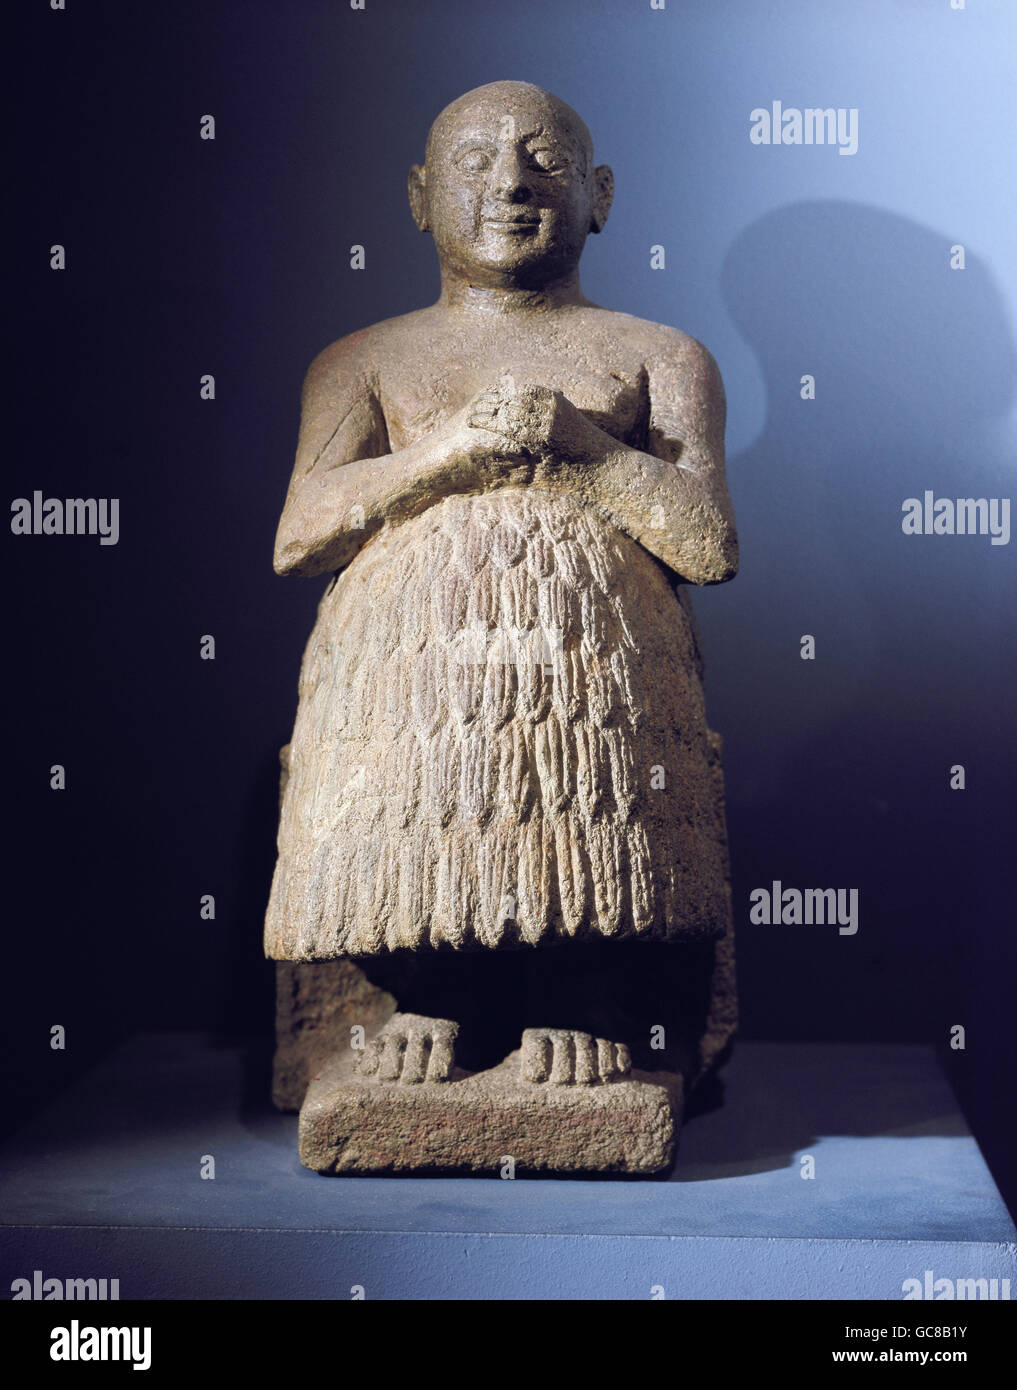 Belle arti, mondo antico, sumerico, scultura, cancelliere Dudu, basalto, Ur-I-stile, Ur, circa 2650 - 2400 BC, Iraq, Iraqi National Museum, Bagdad, Foto Stock